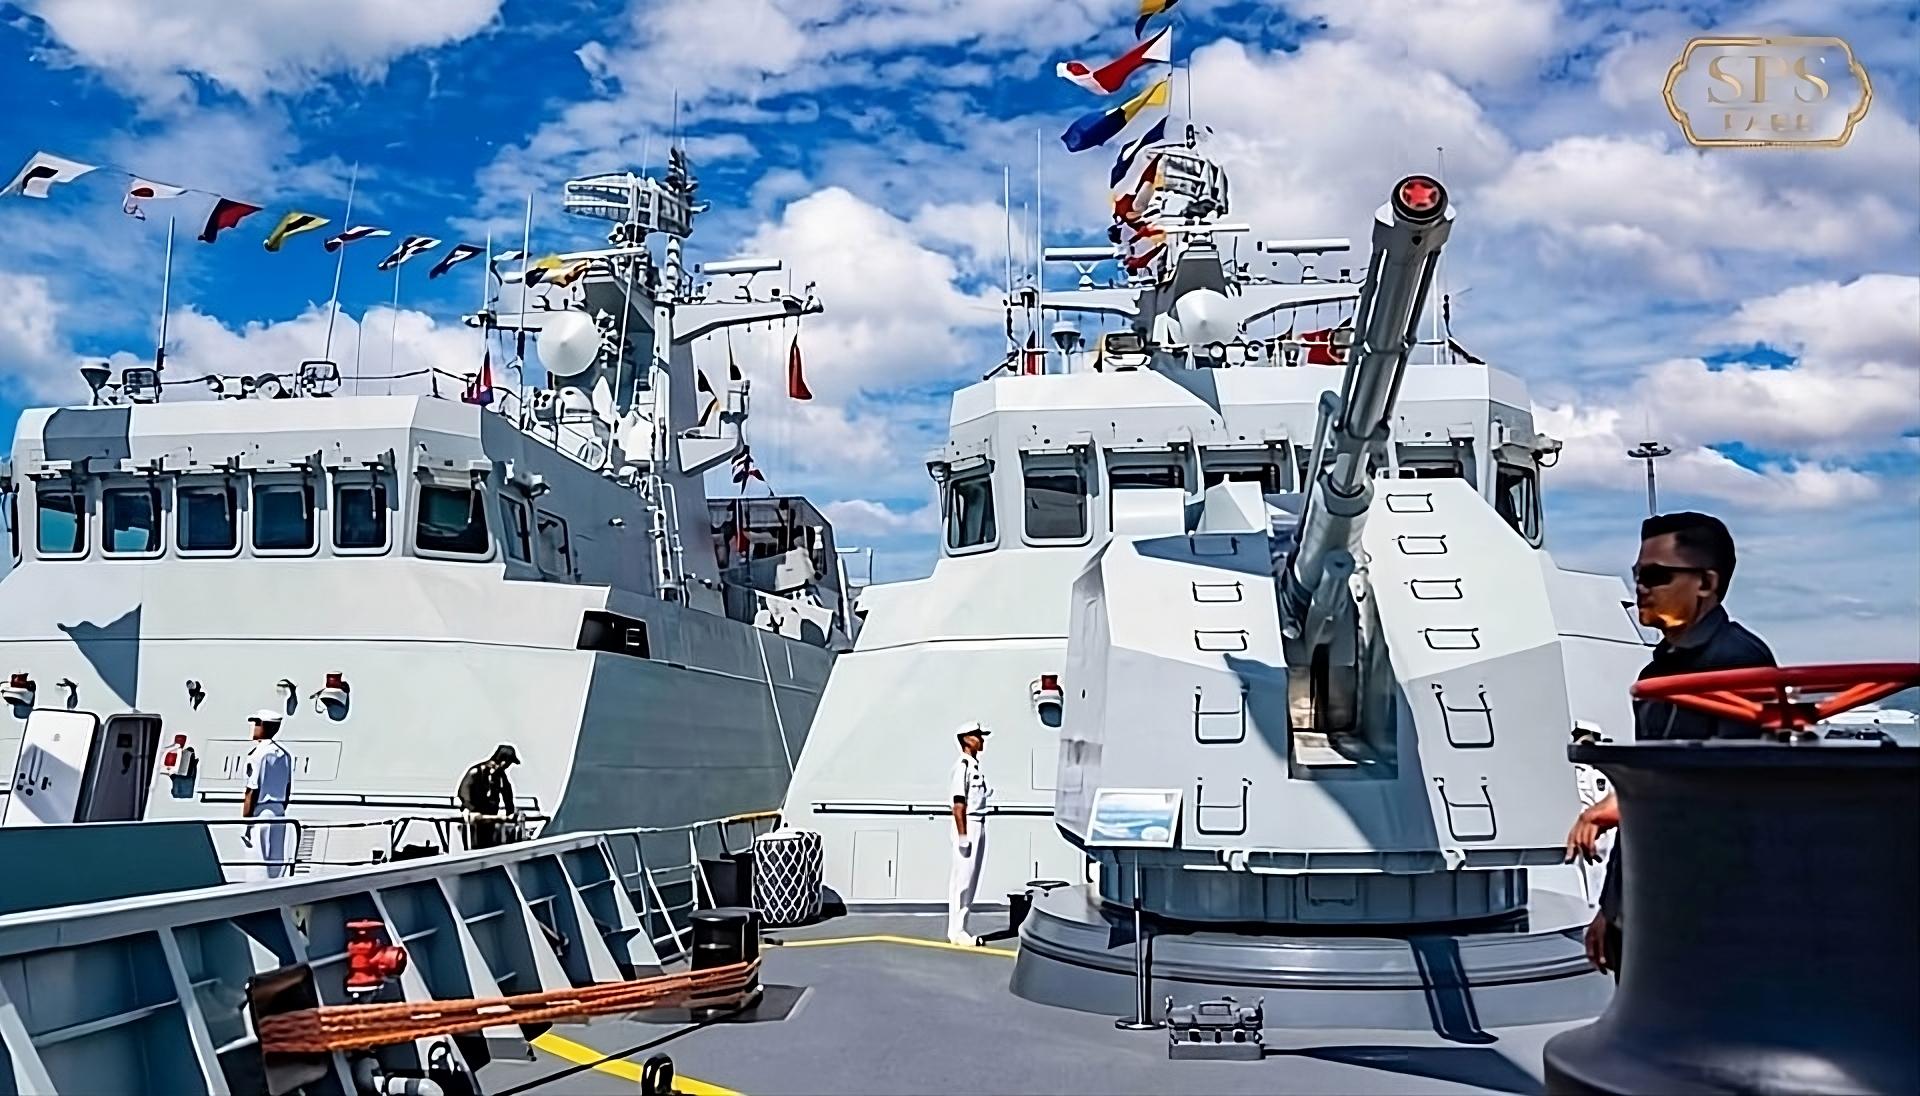 Des navires de guerre aperçus pour la première fois sur la base navale secrète d’outre-mer de la Chine